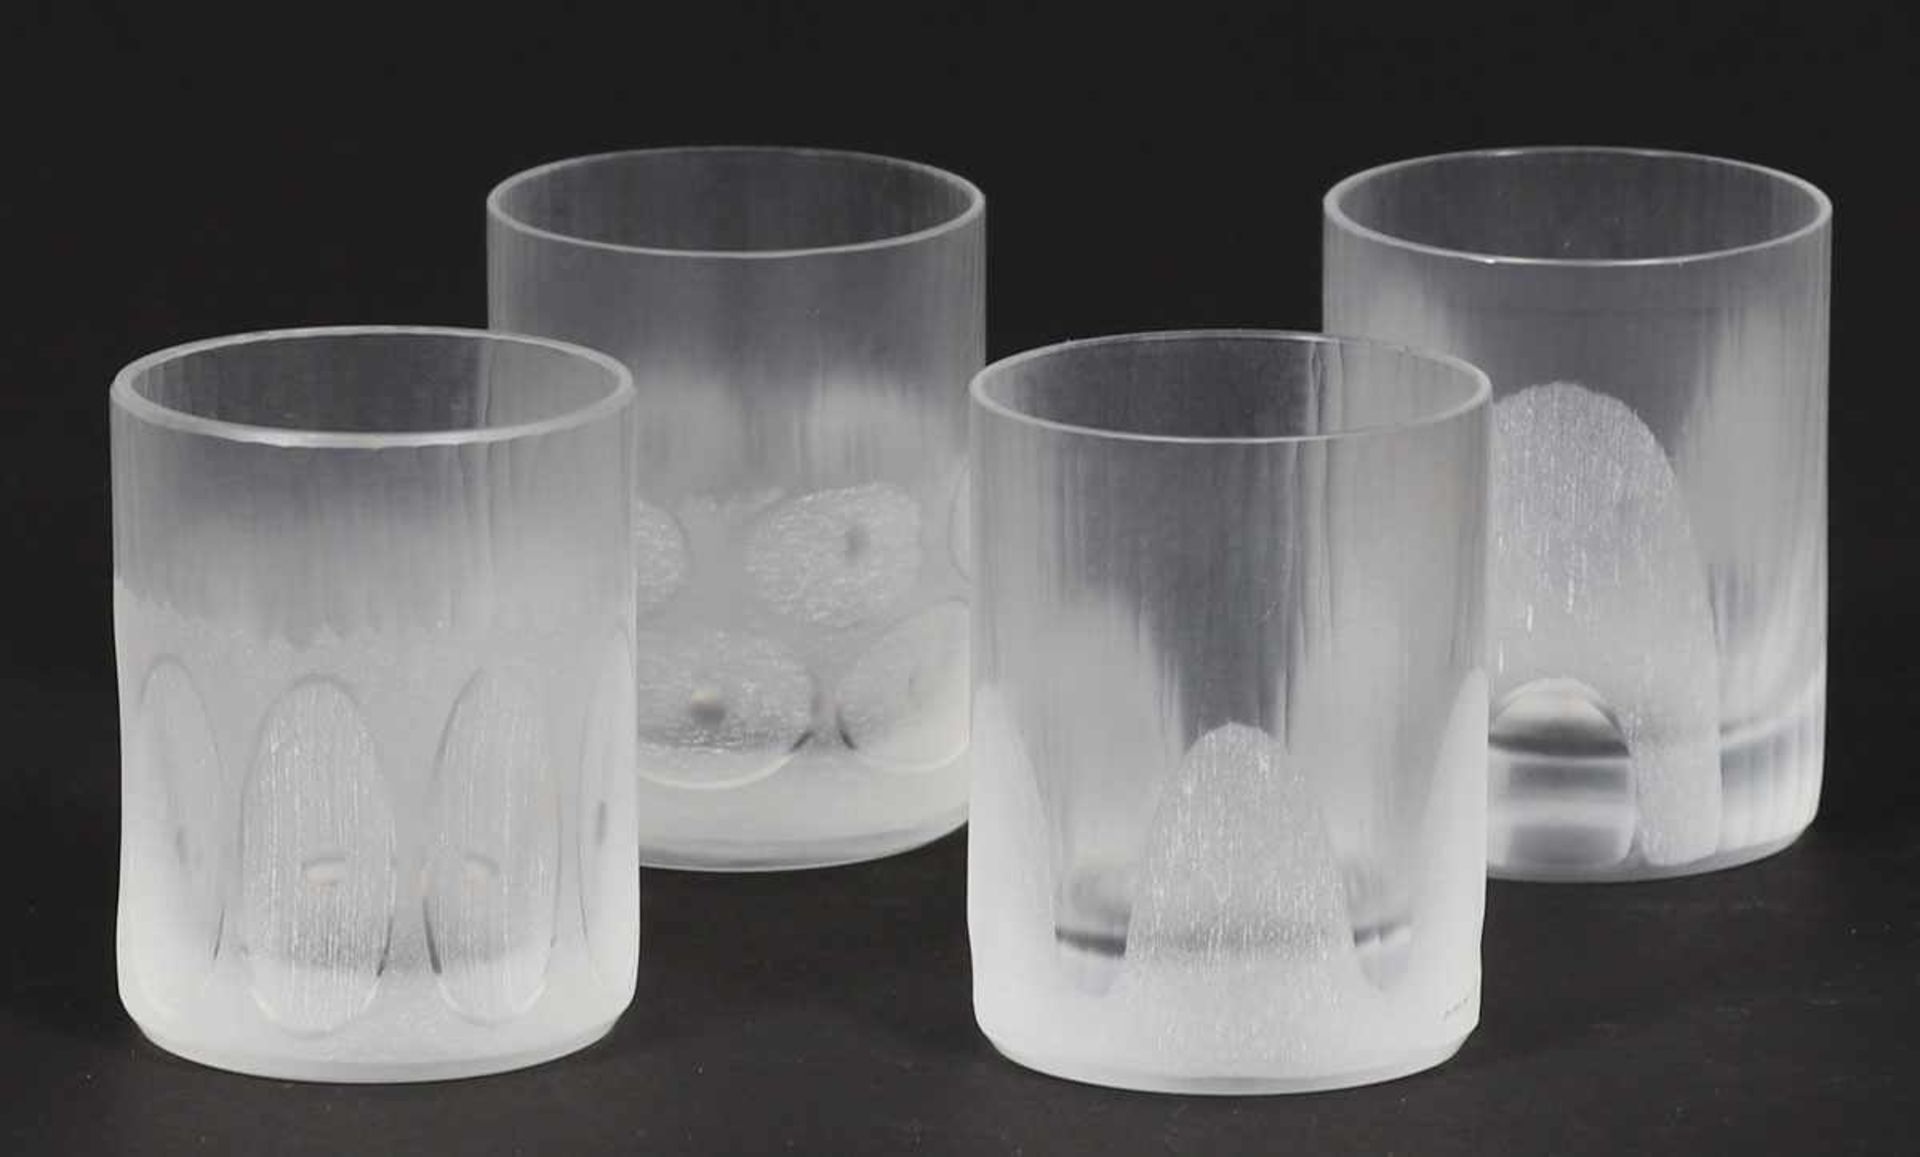 4 SchnapsbecherFarbloses Glas, unterschiedliche Kreissegmente eingeschliffen, außen mattiert. H. 6